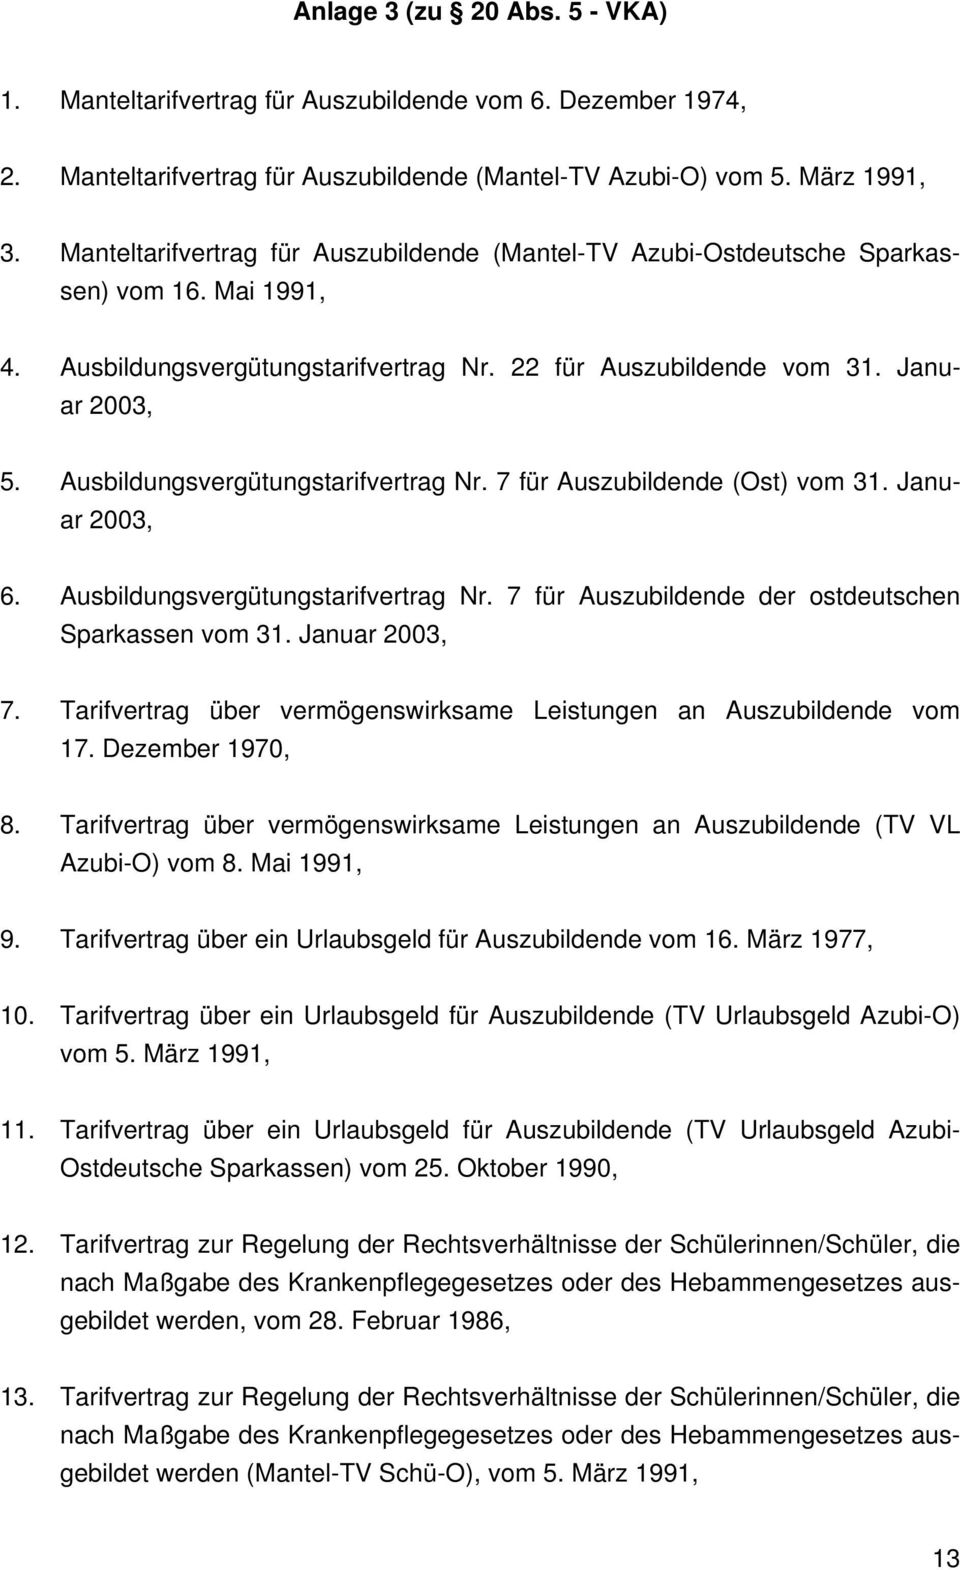 Ausbildungsvergütungstarifvertrag Nr. 7 für Auszubildende (Ost) vom 31. Januar 2003, 6. Ausbildungsvergütungstarifvertrag Nr. 7 für Auszubildende der ostdeutschen Sparkassen vom 31. Januar 2003, 7.